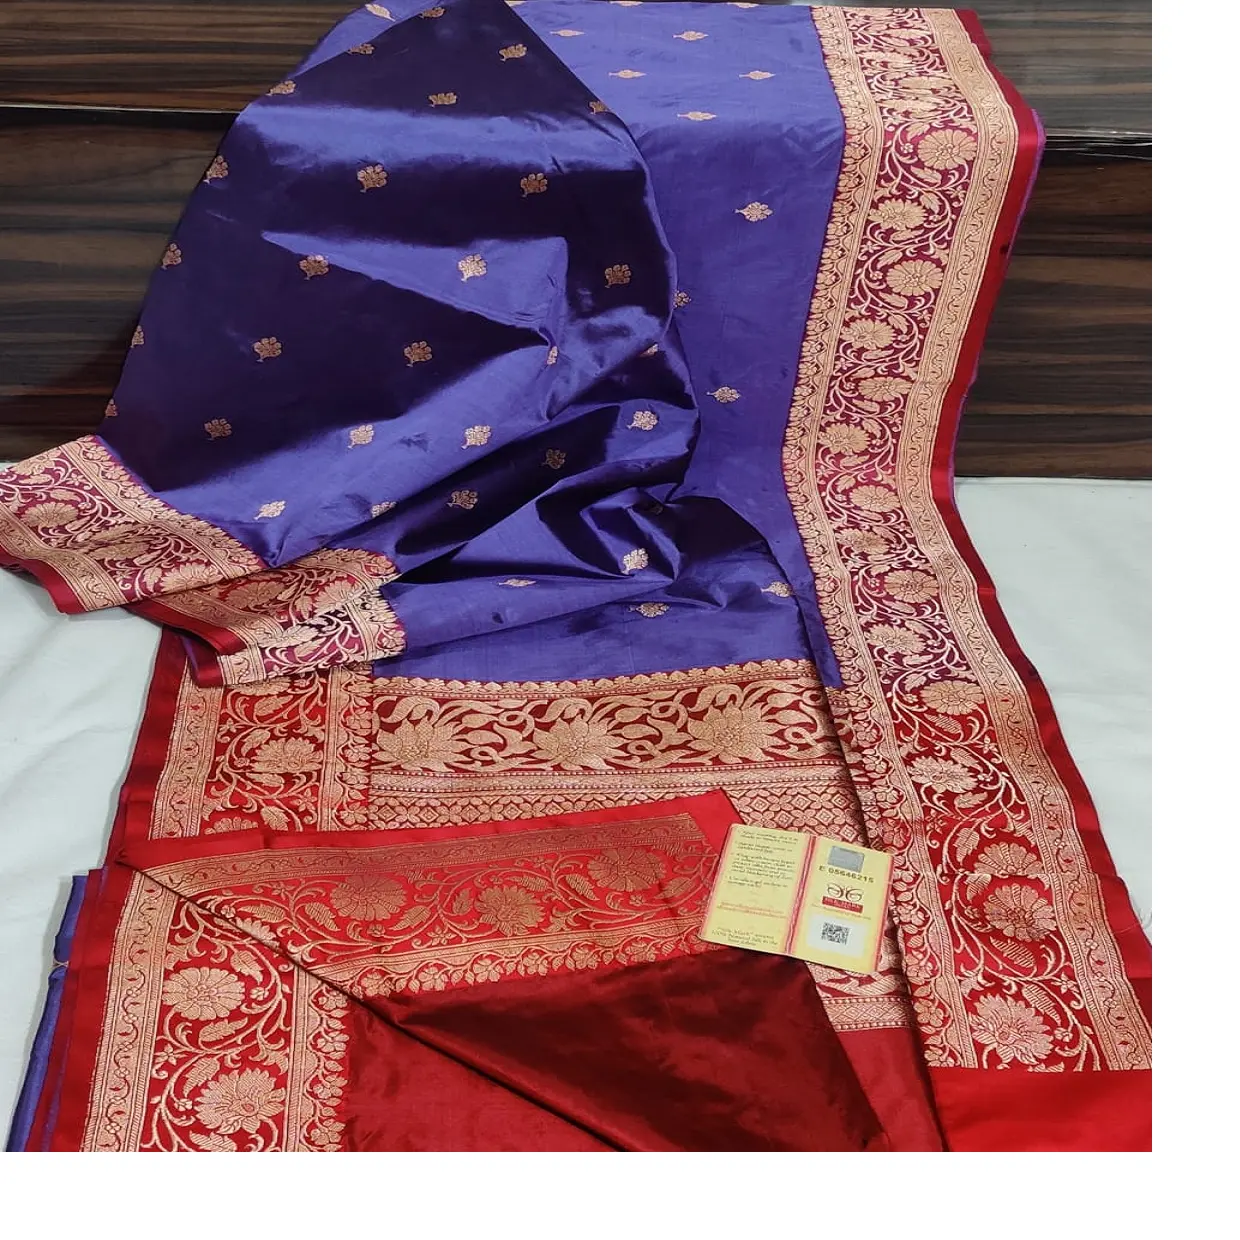 패션 디자이너 및 패션 상점에 이상적인 로얄 블루 컬러 브로케이드 실크 원단 및 sarees로 맞춤 제작